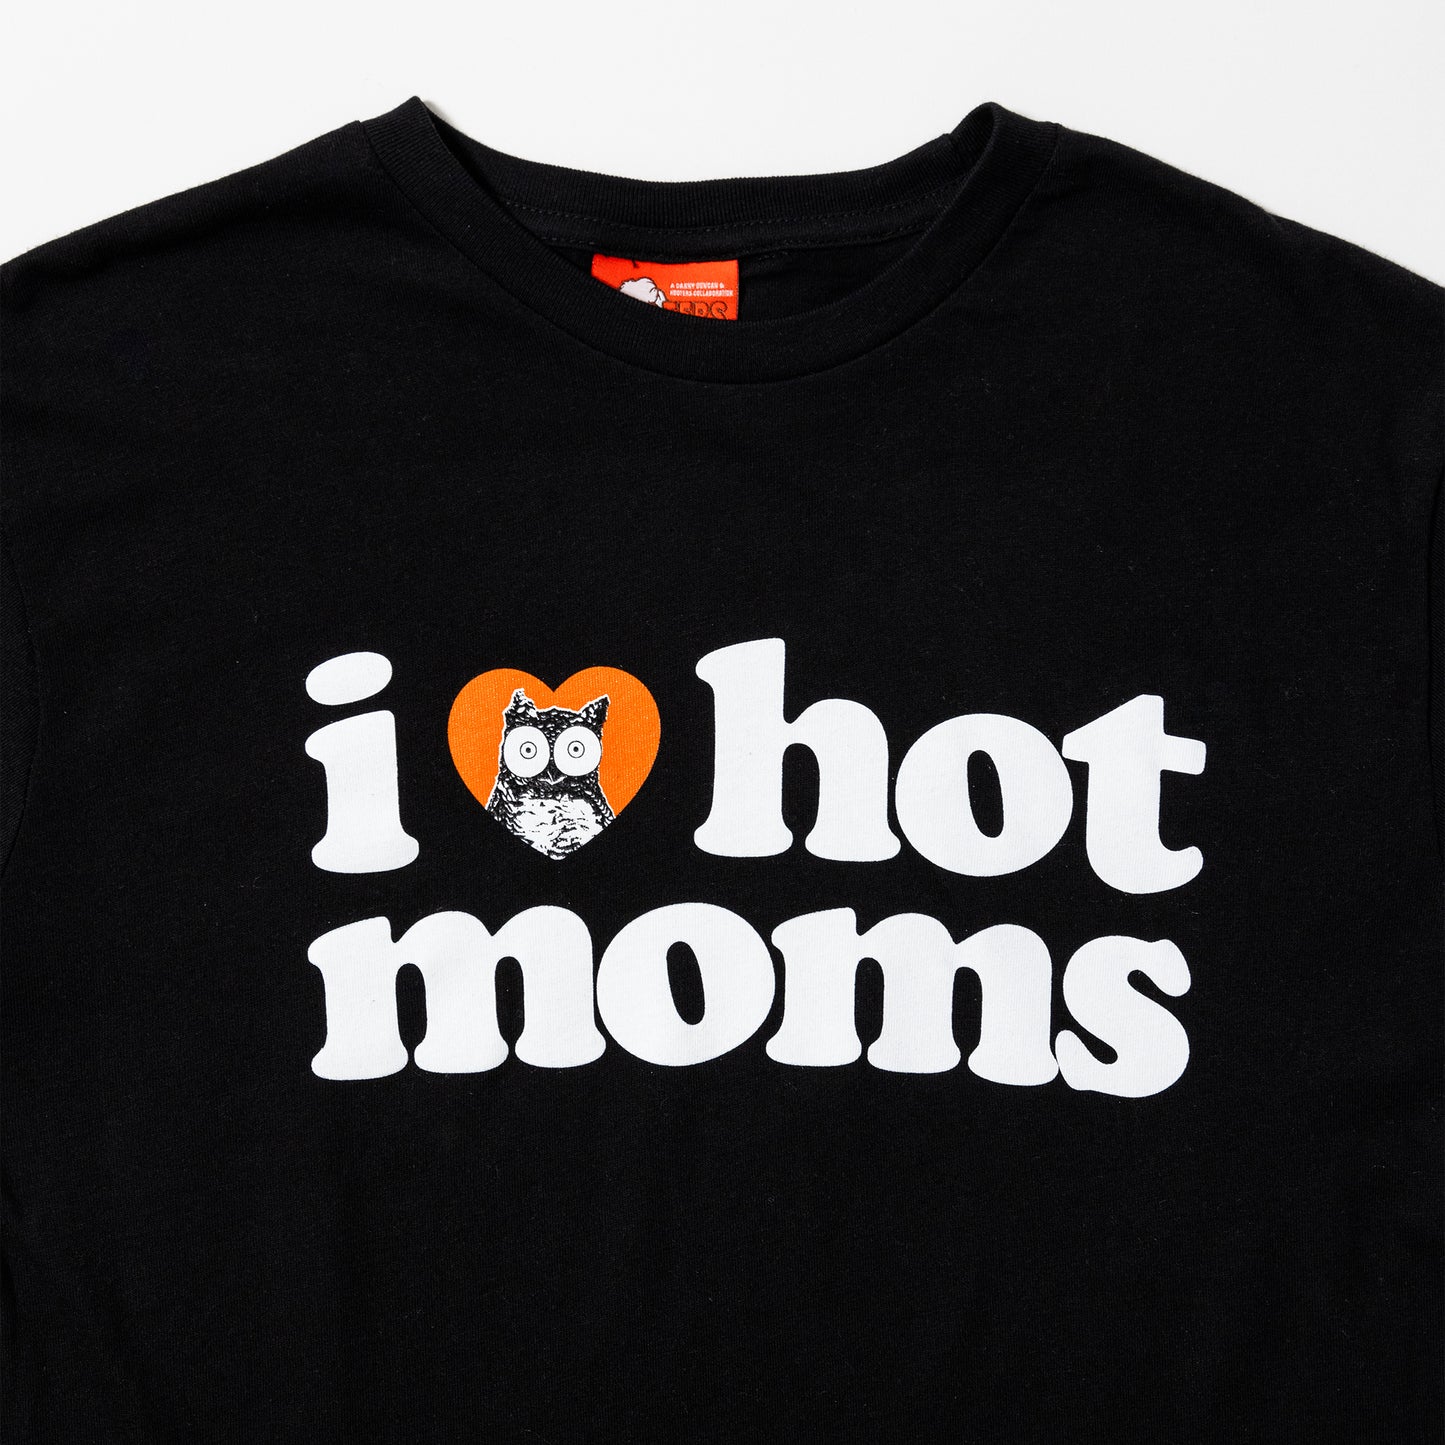 I Heart Hot Moms x Hooters Black Tee